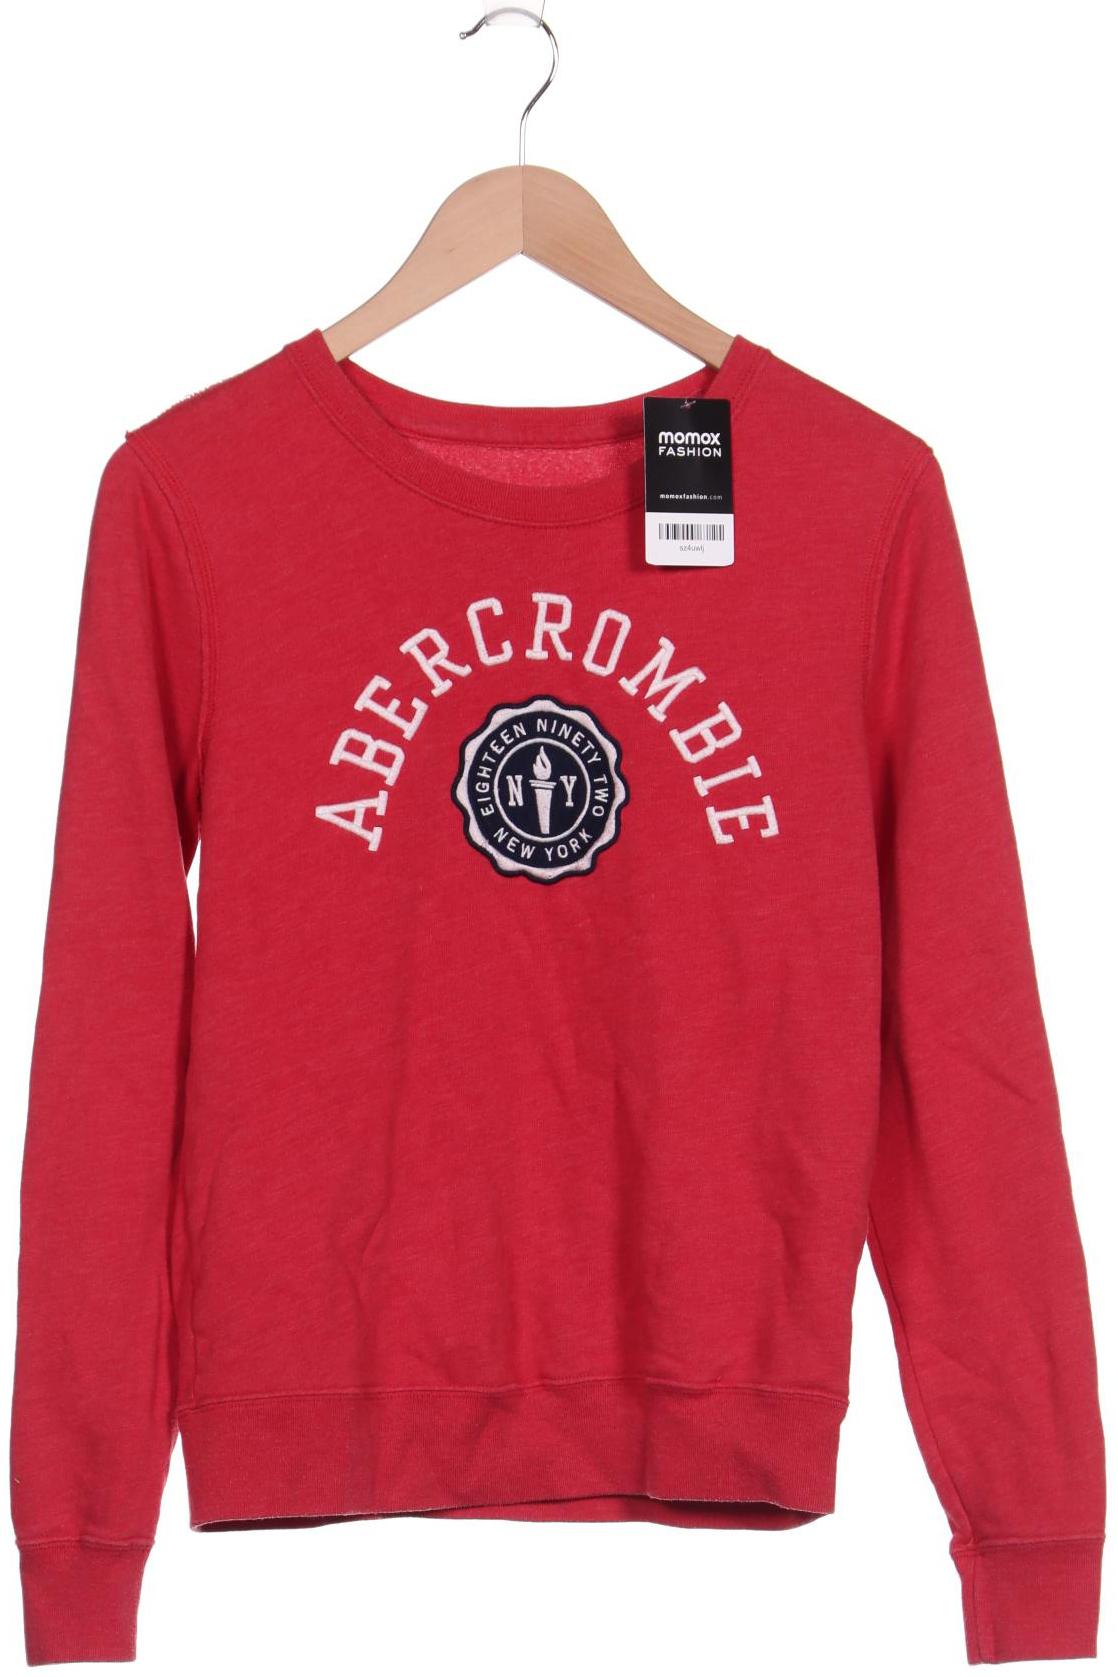 Abercrombie & Fitch Damen Sweatshirt, rot von Abercrombie & Fitch